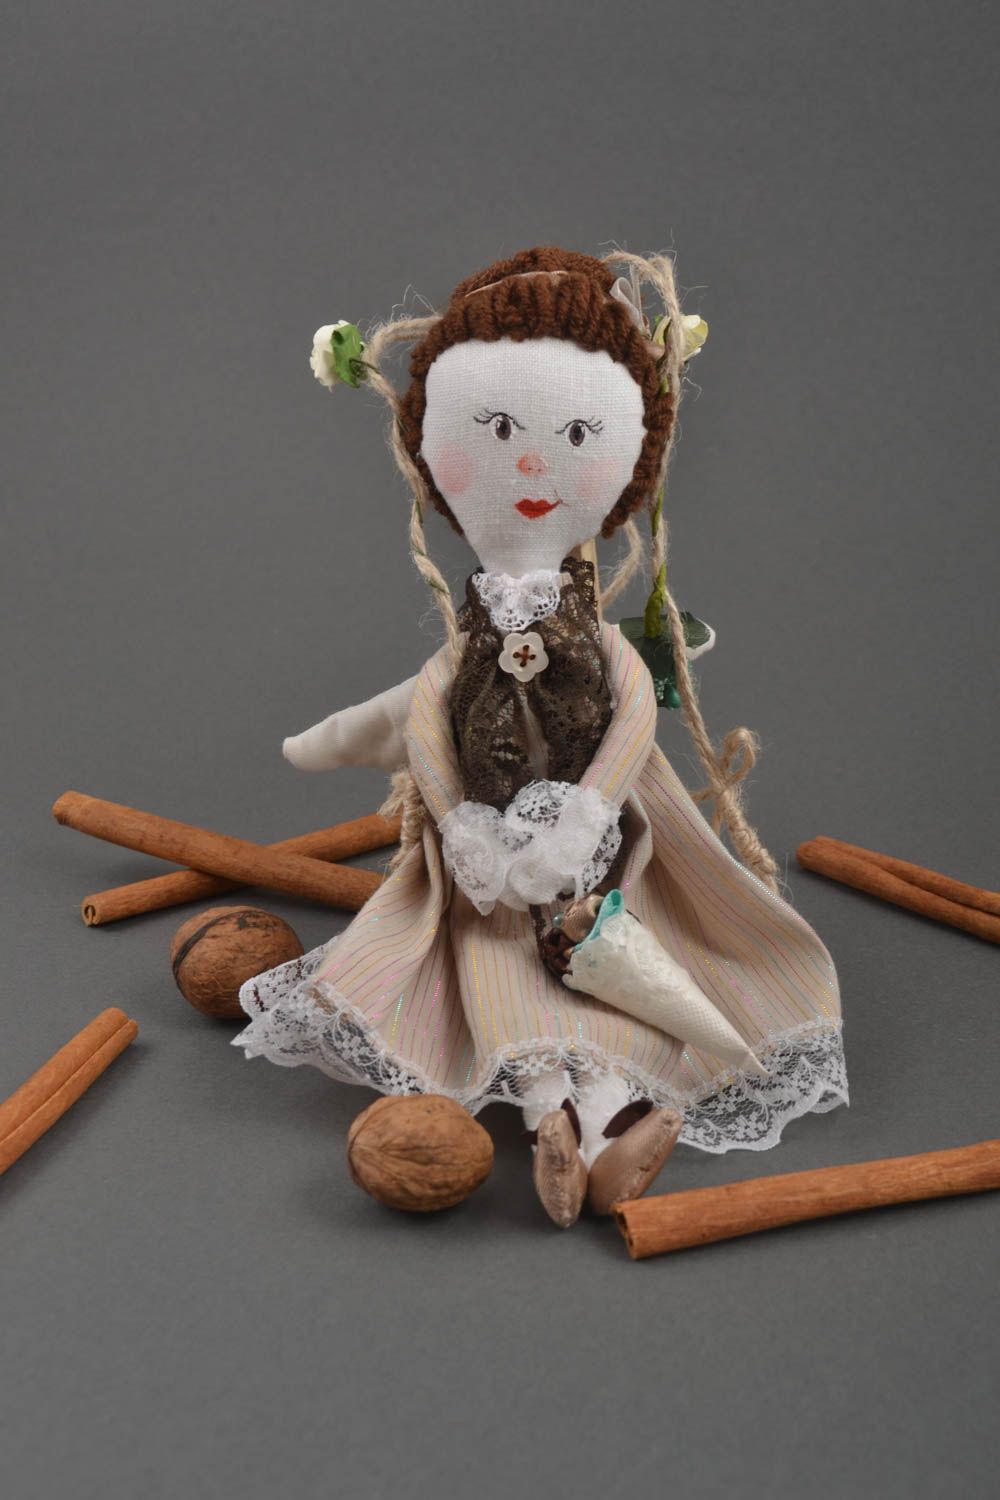 Wand Dekor Puppe handgemacht Spielzeug Puppe Deko Anhänger Engel Mädchen nett foto 1